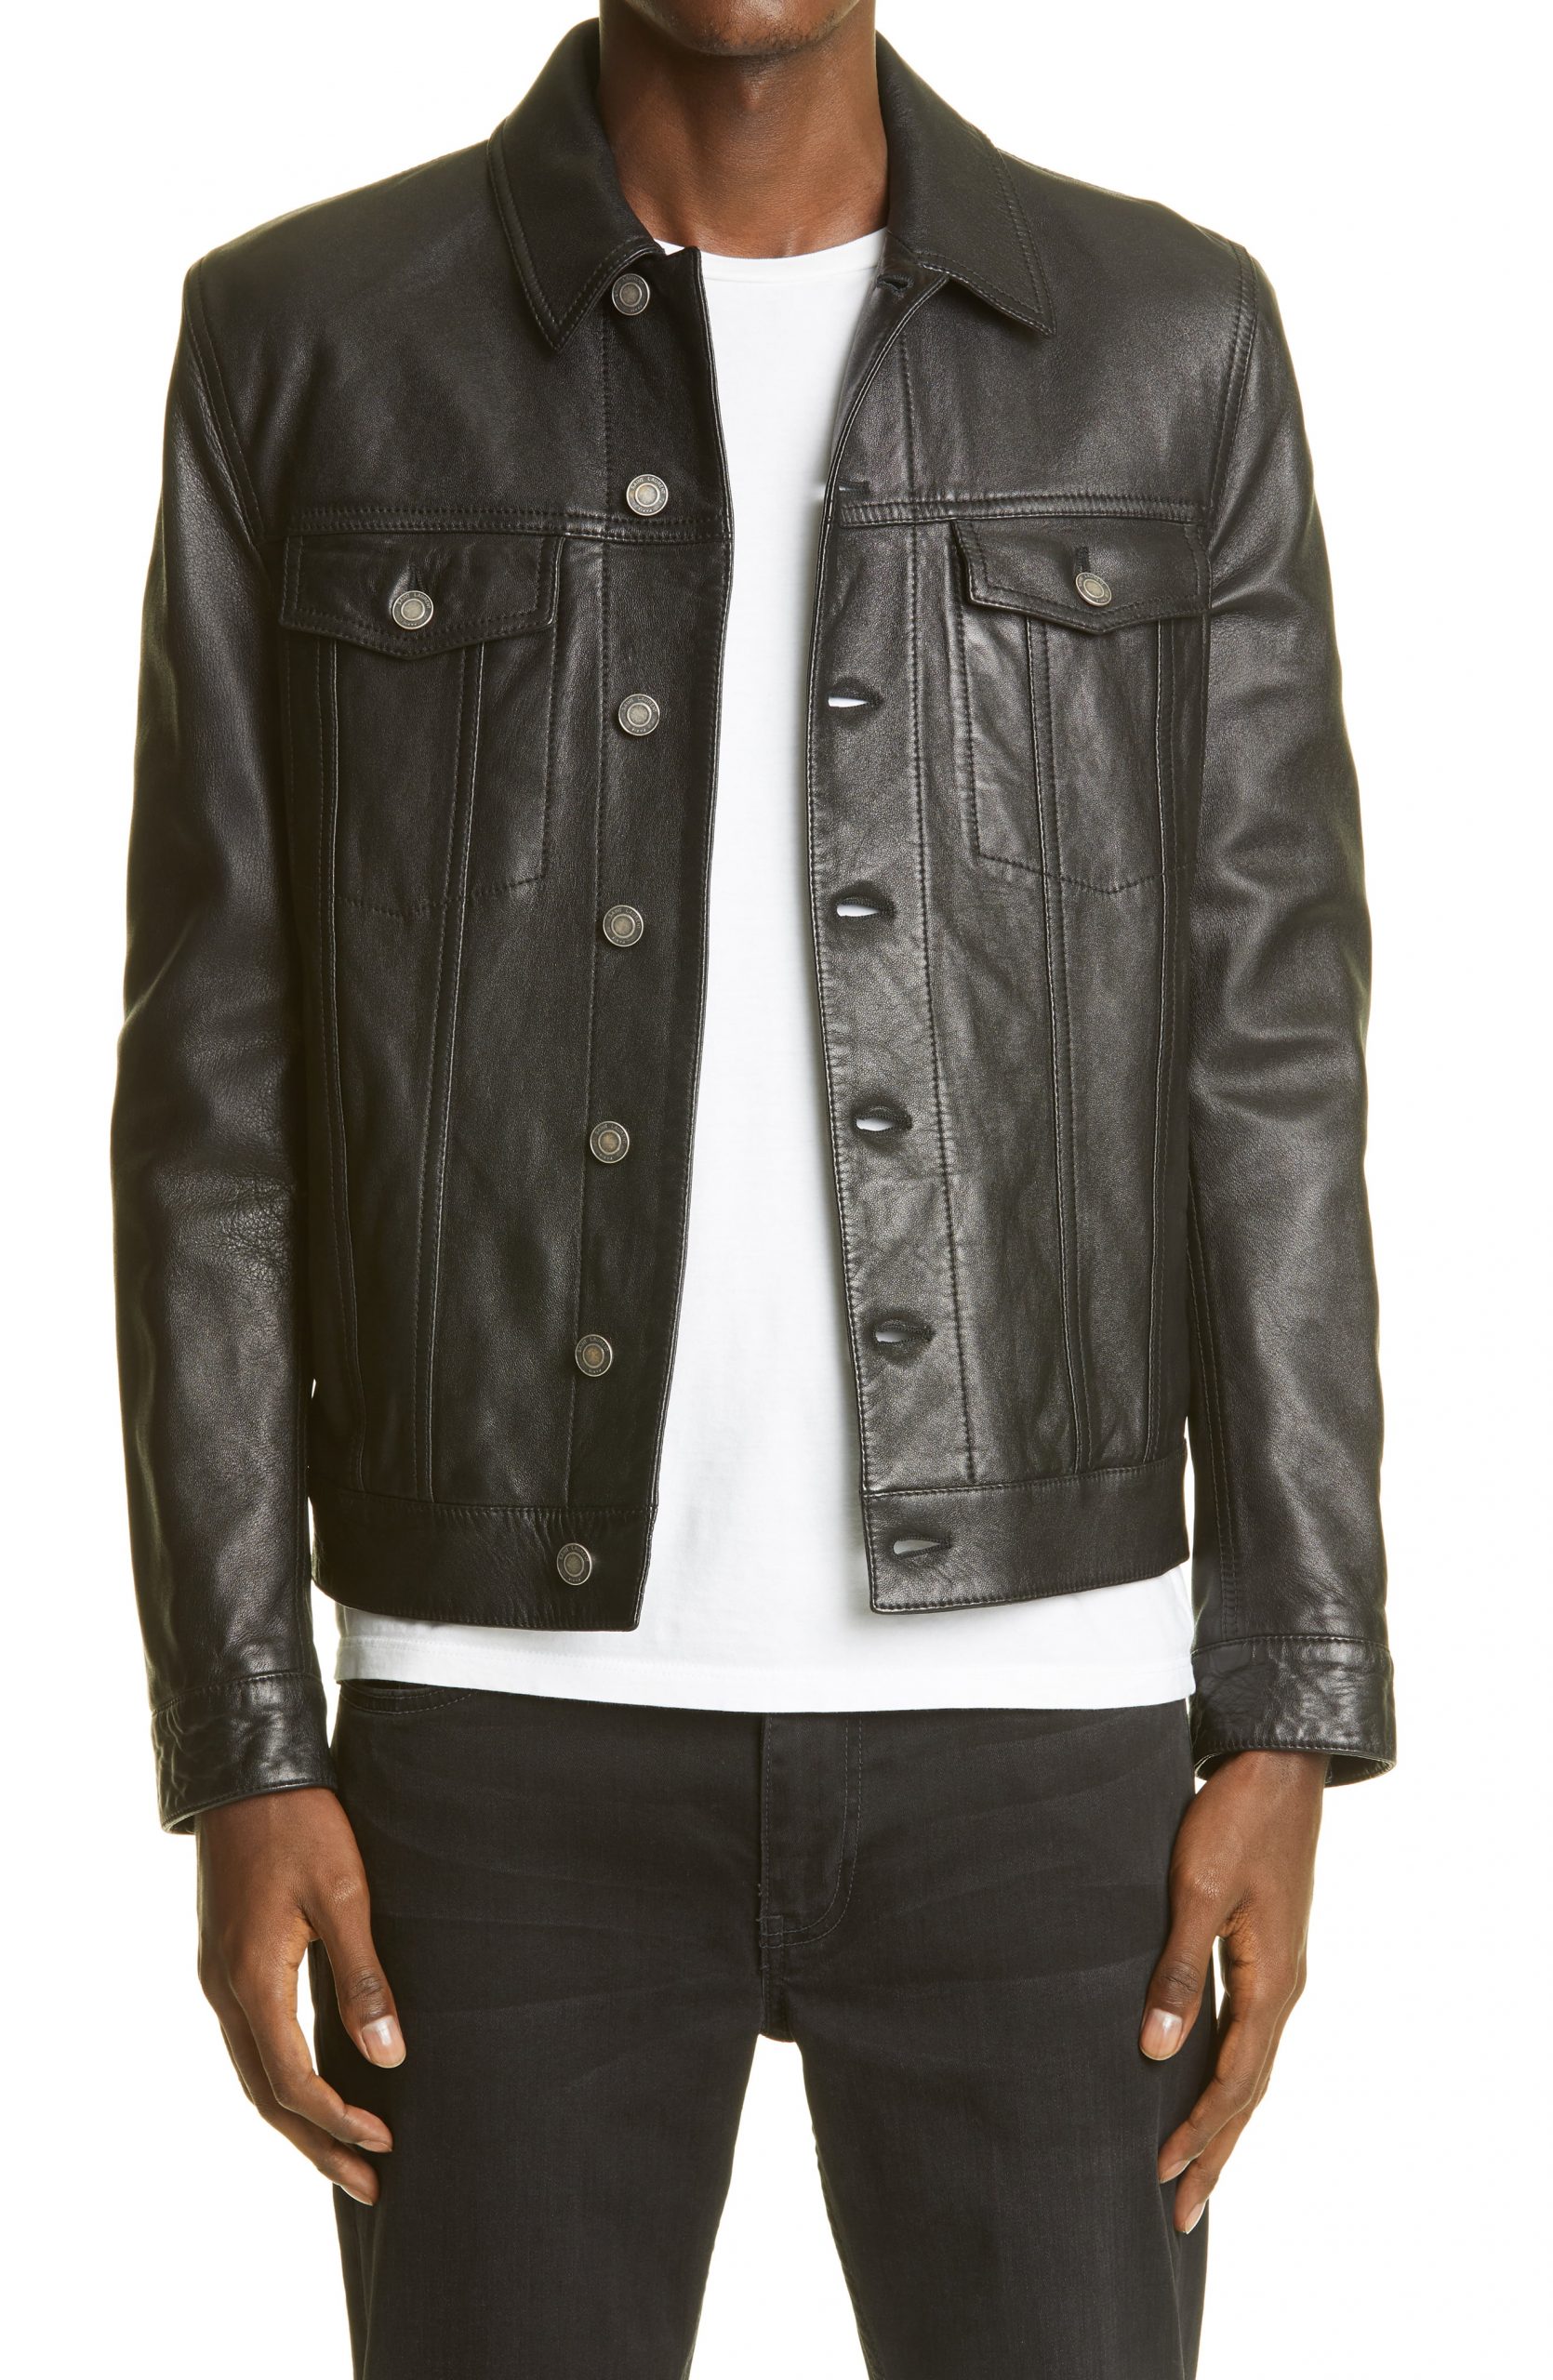 Saint Laurent Leather Jacket Outlet Website, Save 40% | jlcatj.gob.mx